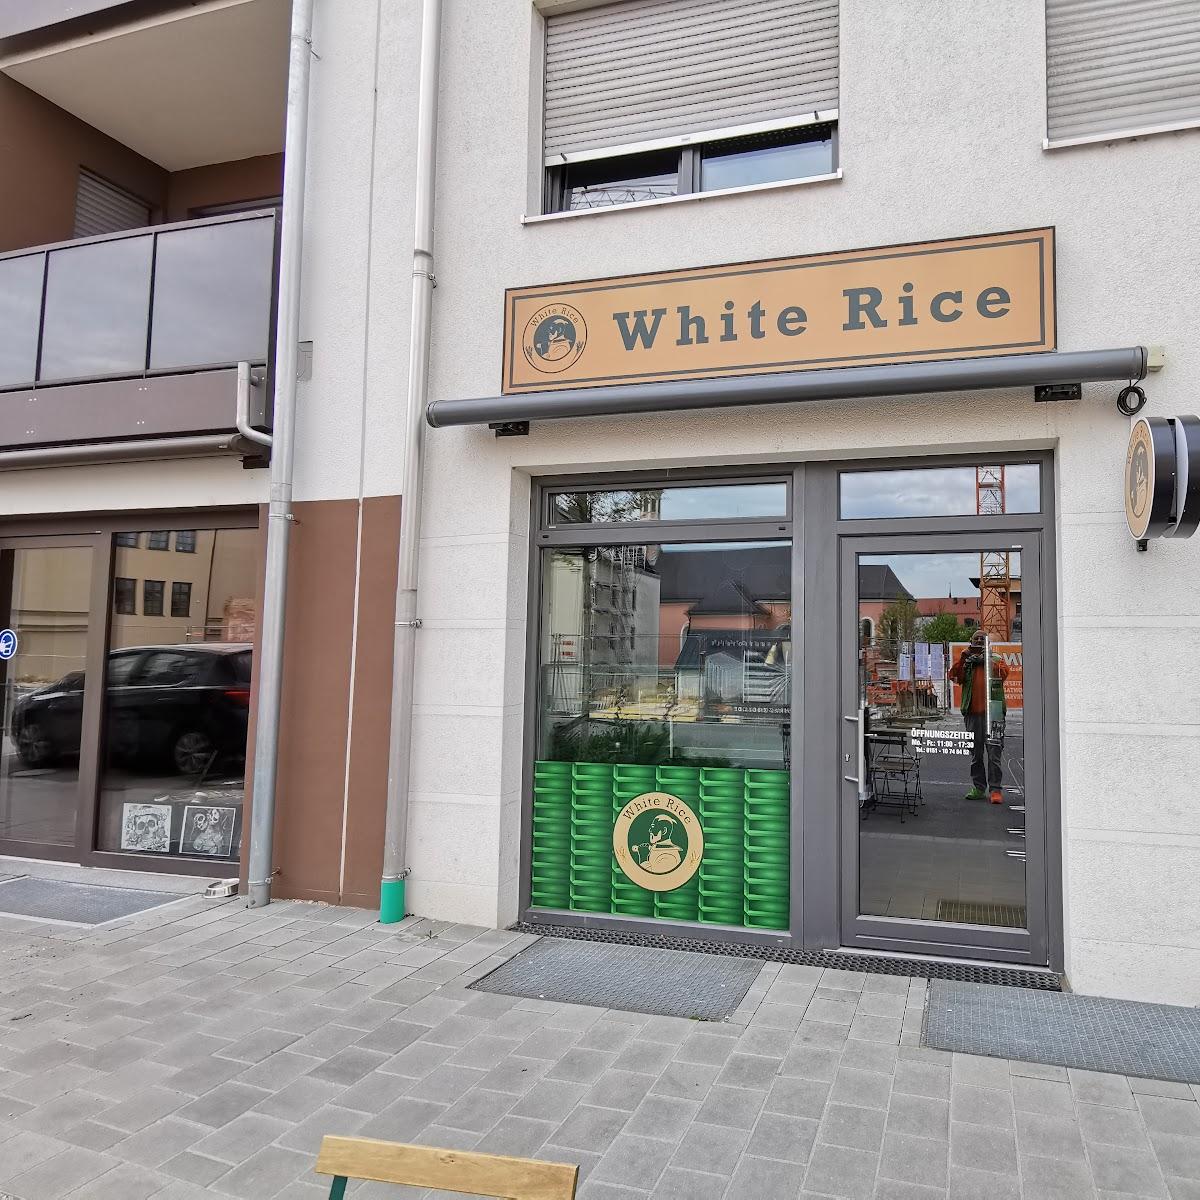 Restaurant "White Rice" in Pfaffenhofen an der Ilm